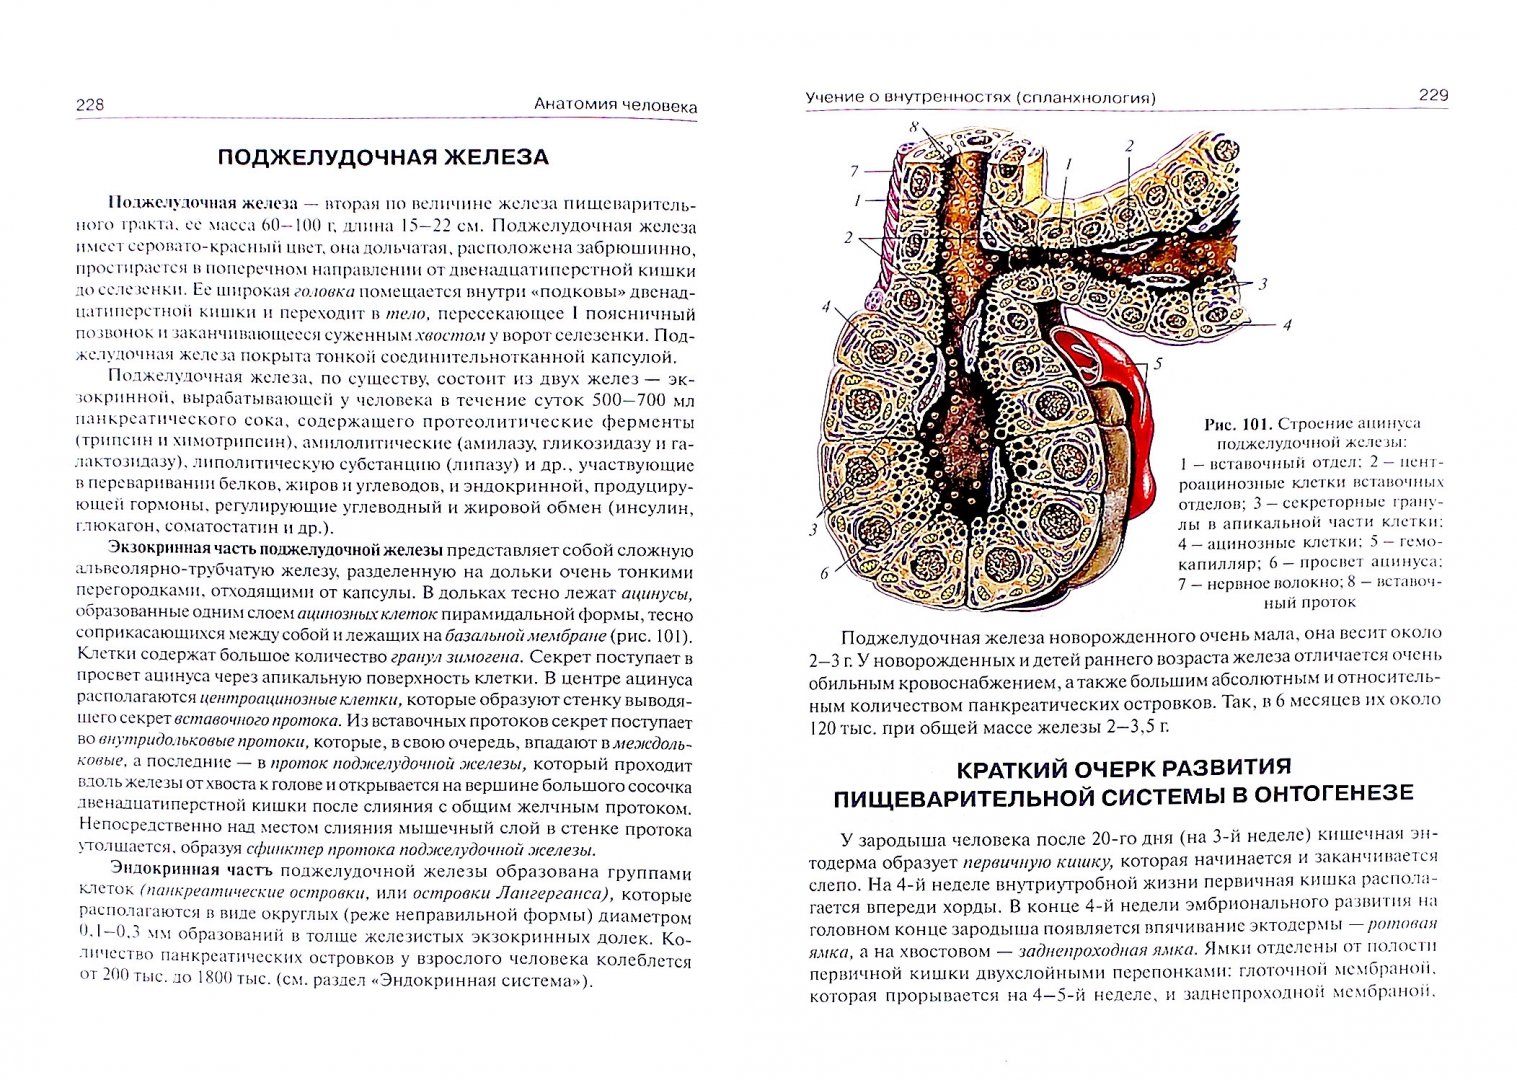 Иллюстрация 1 из 10 для Анатомия человека. Учебник для медицинских училищ и колледжей - Сапин, Билич | Лабиринт - книги. Источник: Лабиринт